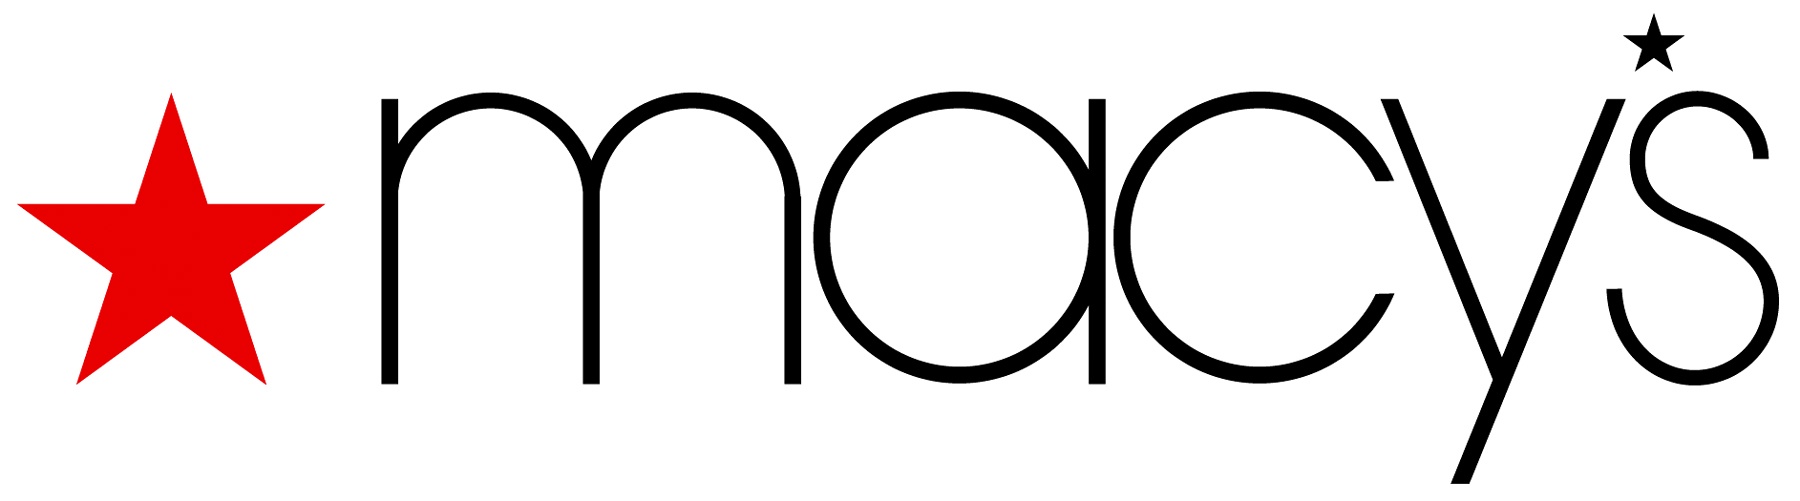 Macys logo.jpg